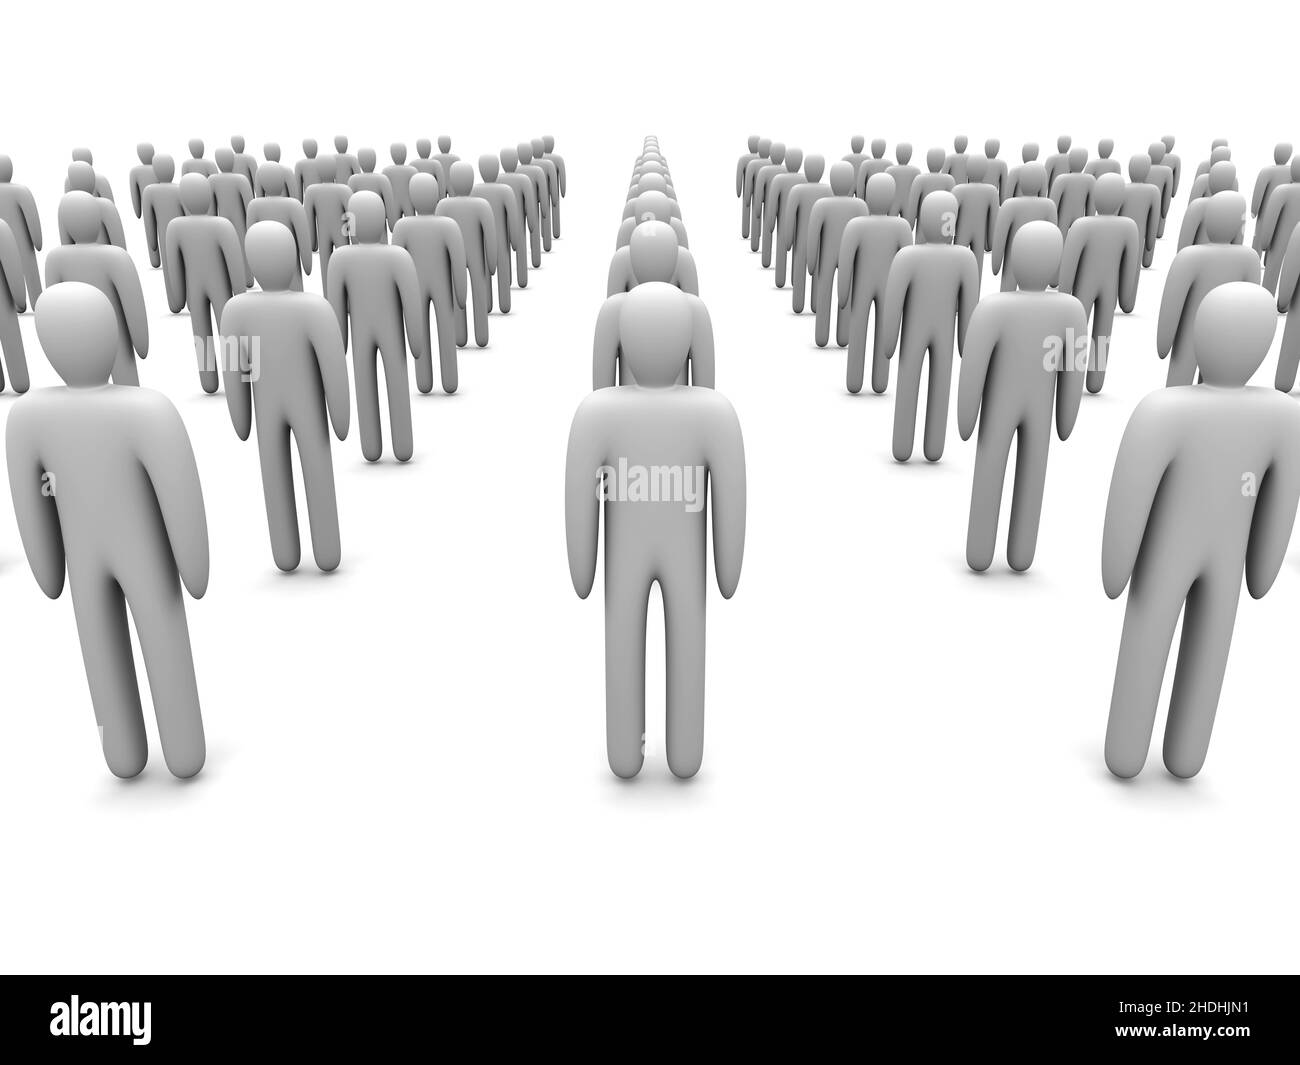 Gente en una fila Imágenes de stock en blanco y negro - Alamy